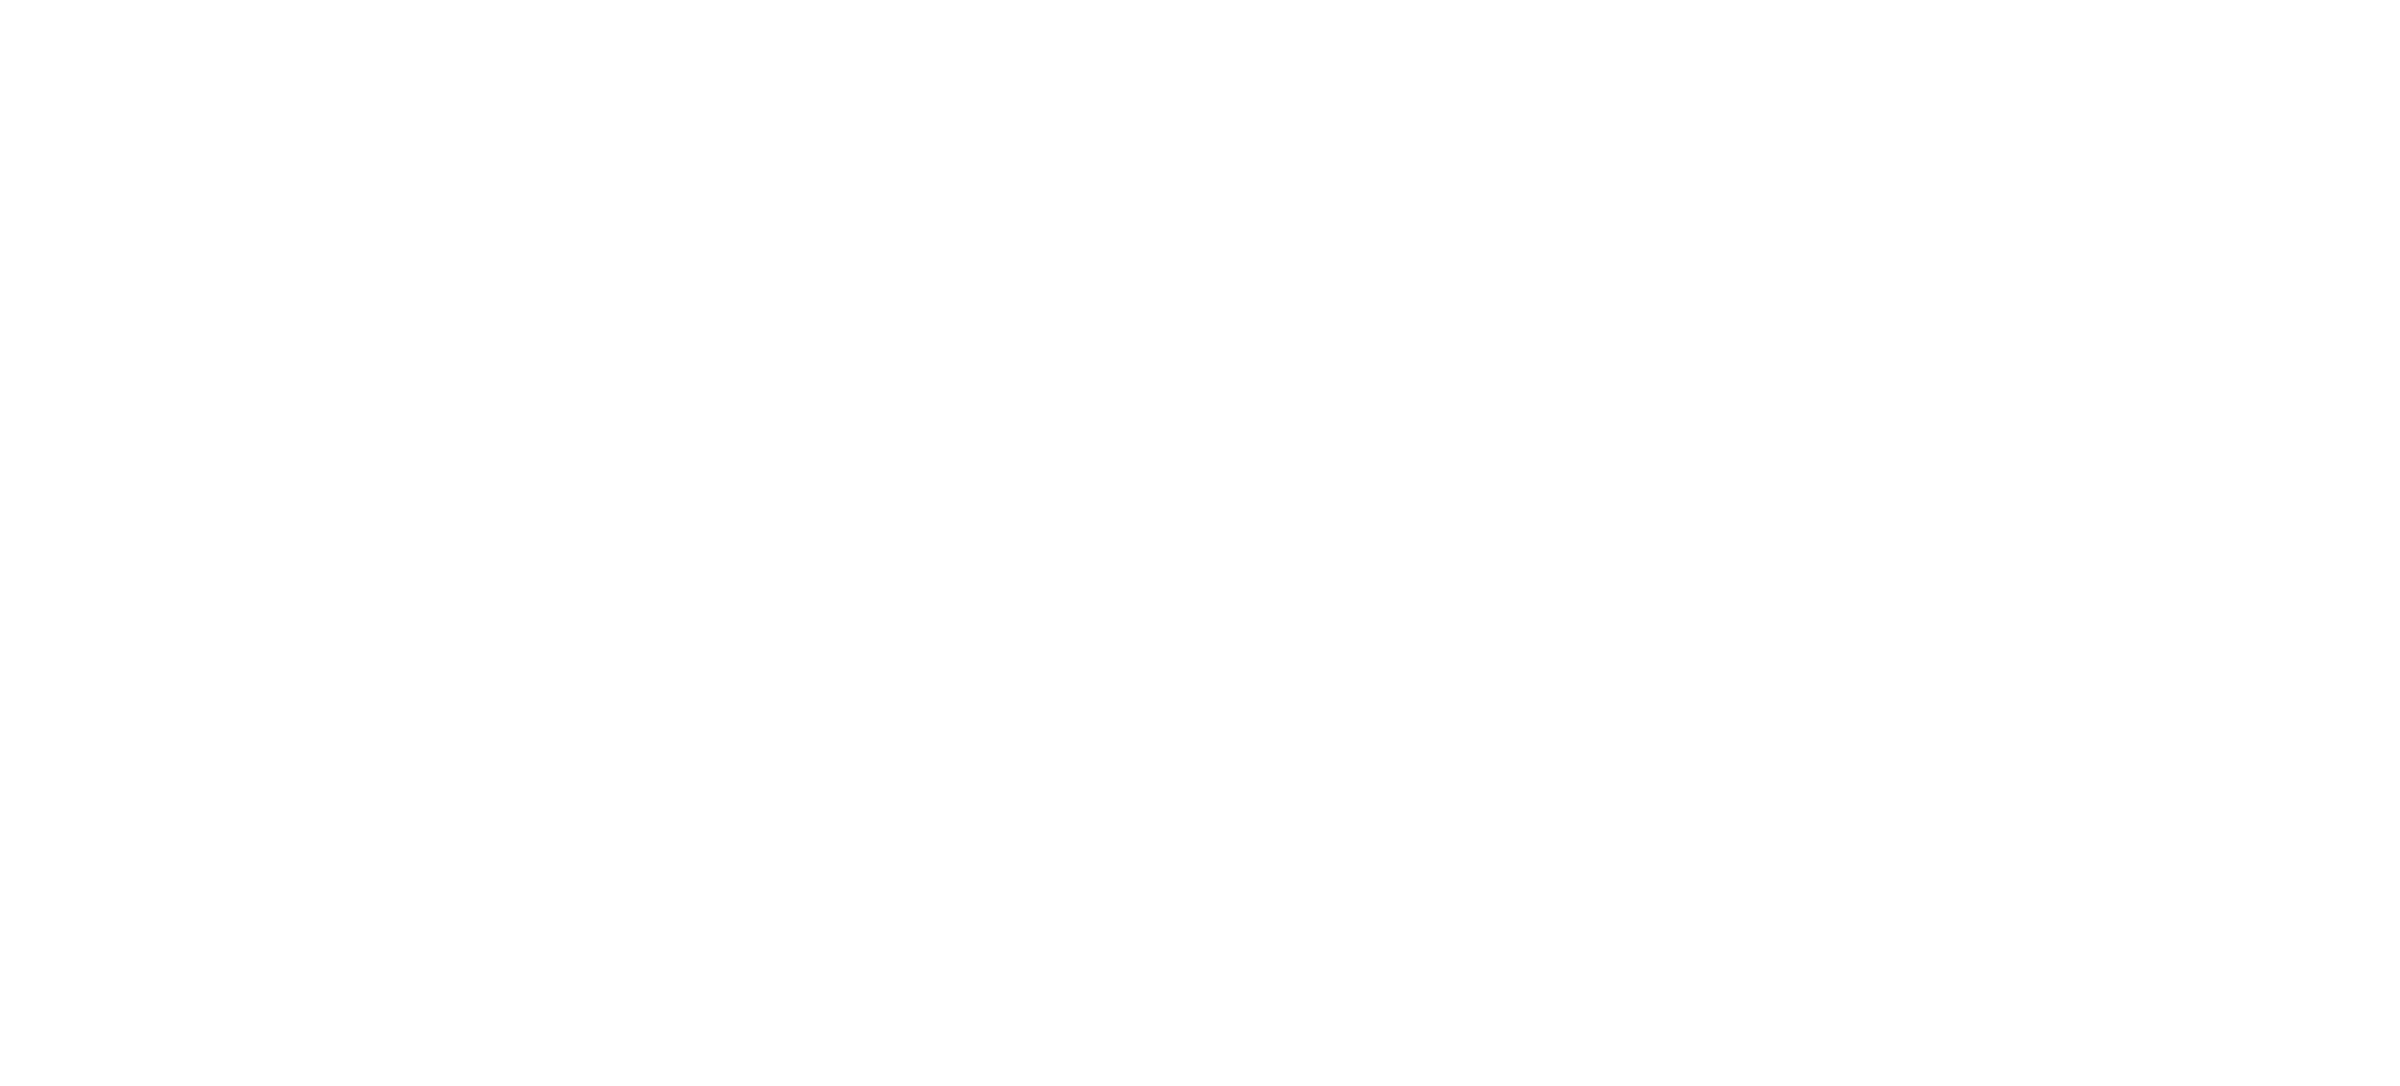 Olay Logo - Olay